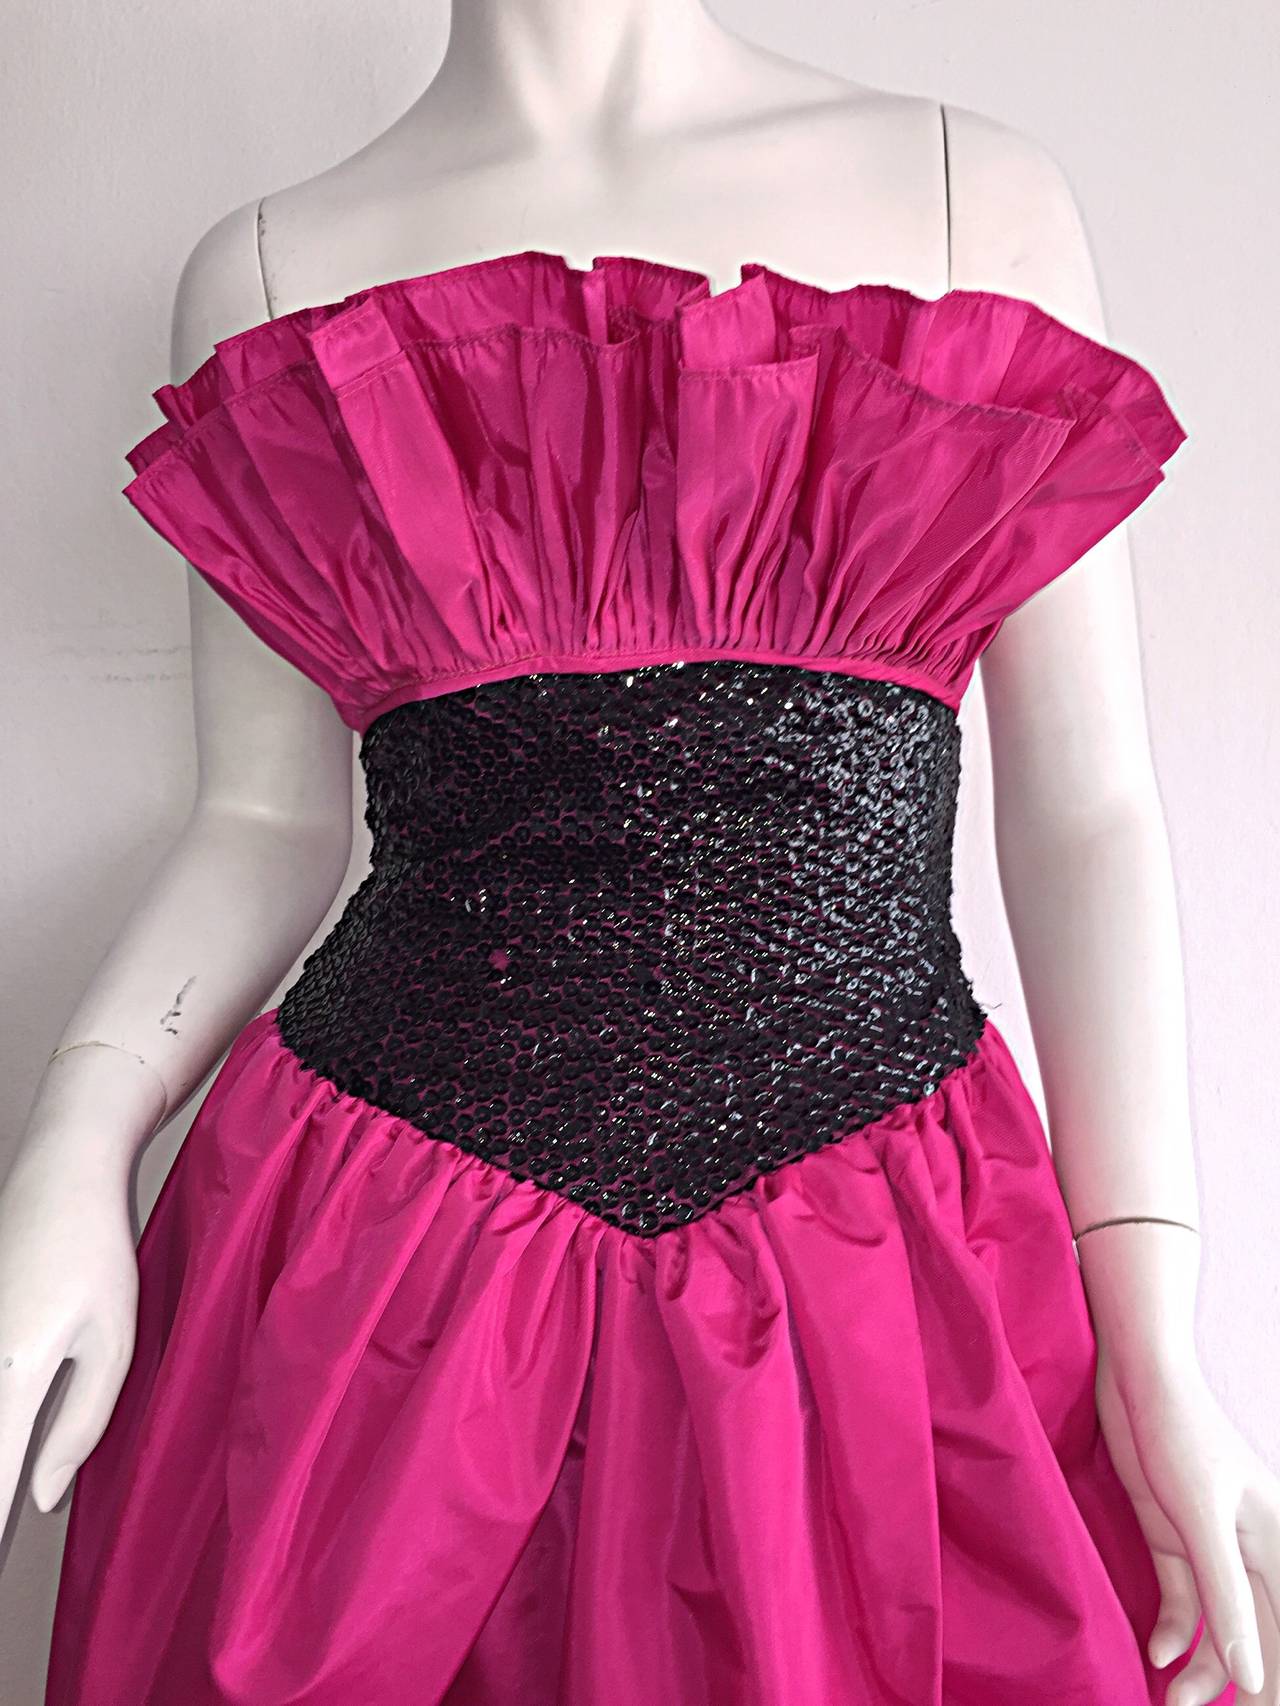 neiman marcus pink dress